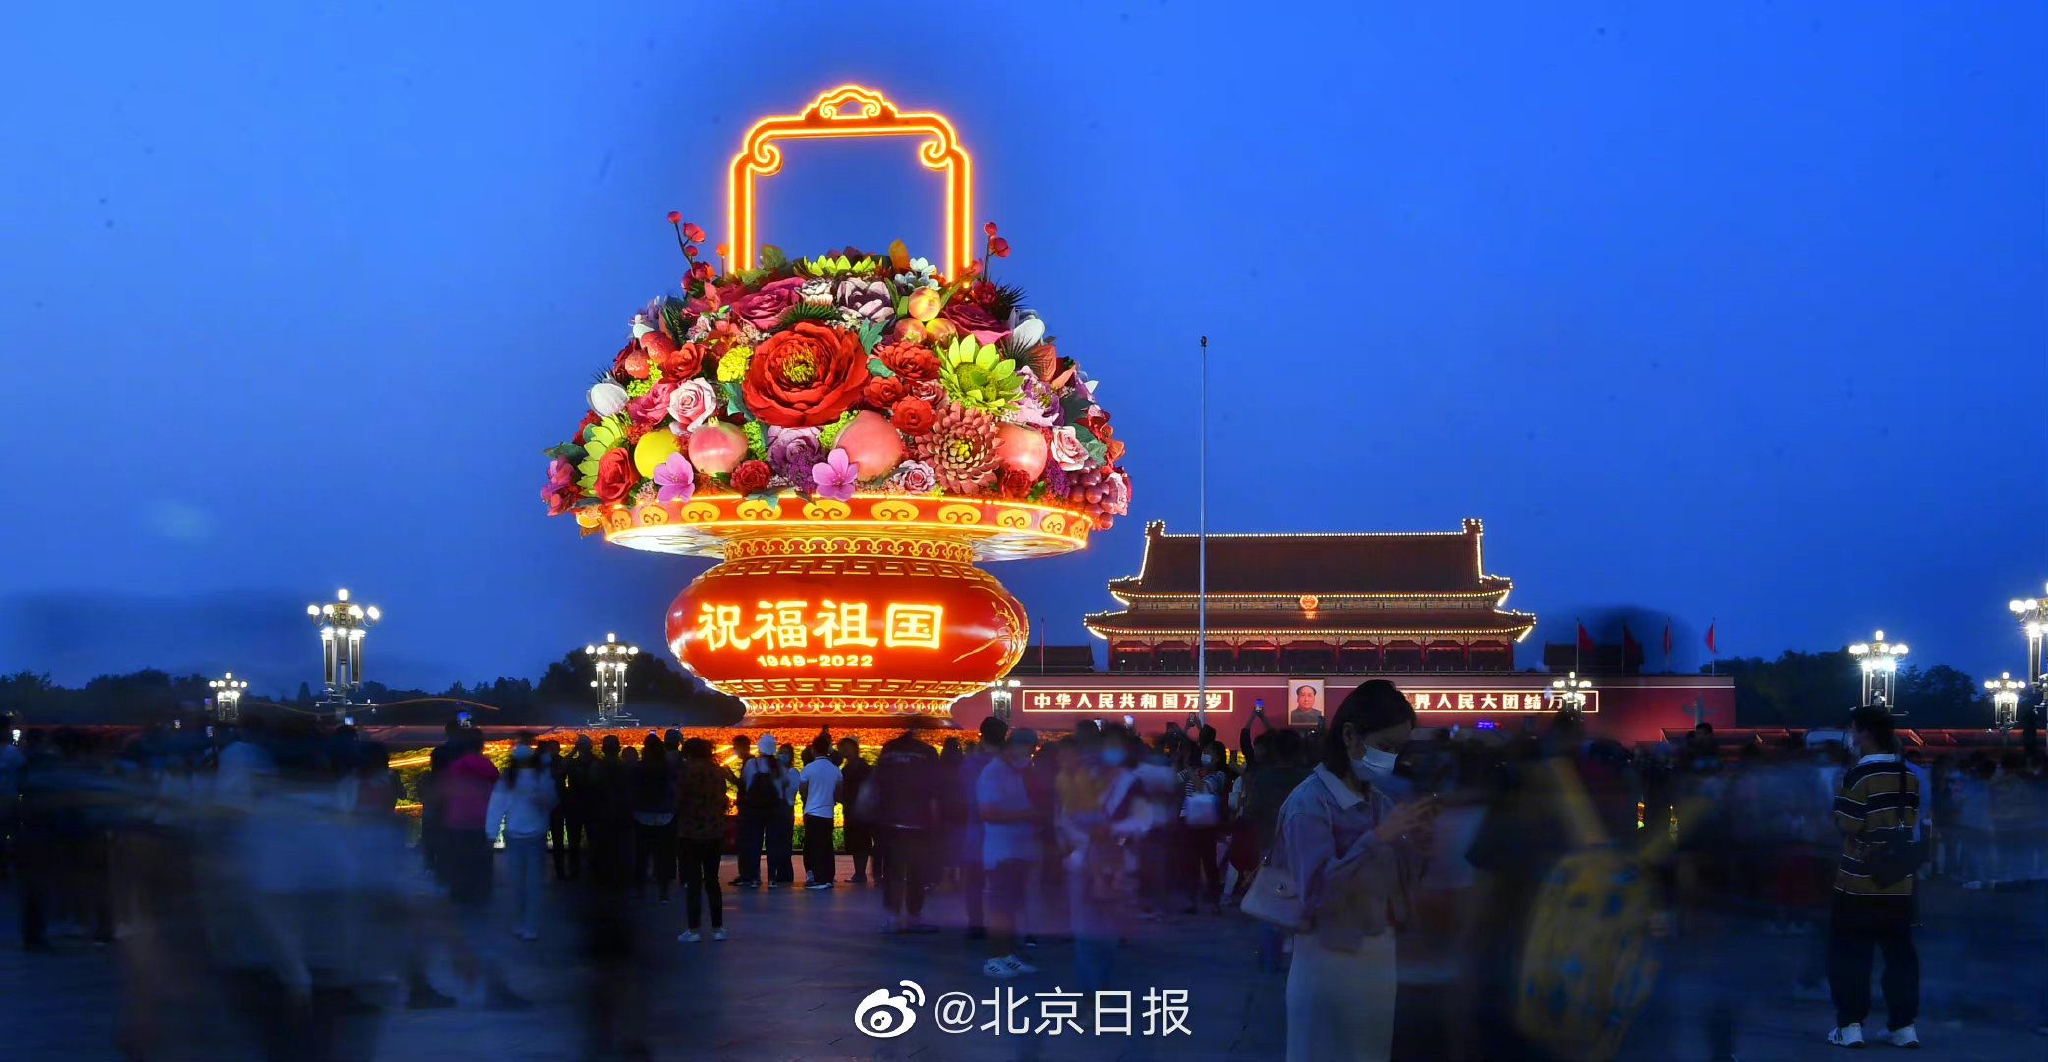 天安门广场祝福祖国巨型花篮亮灯